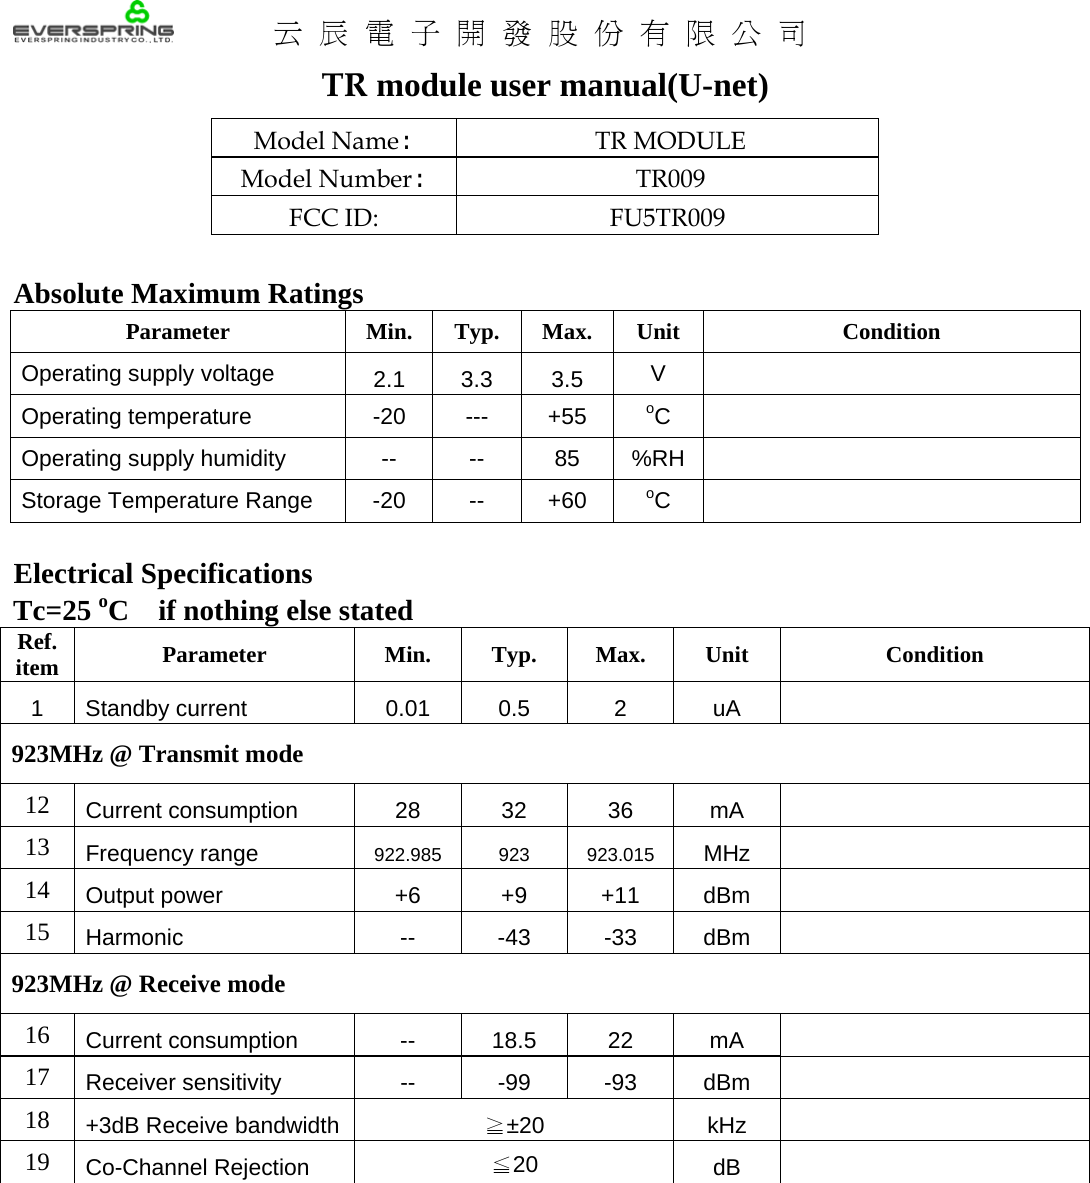    云辰電子開發股份有限公司 TR module user manual(U-net) Model Name: TR MODULE Model Number: TR009 FCC ID:  FU5TR009  Absolute Maximum Ratings Parameter Min. Typ. Max. Unit  Condition Operating supply voltage  2.1 3.3 3.5  V   Operating temperature  -20  ---  +55  oC   Operating supply humidity  --  --  85  %RH  Storage Temperature Range  -20  --  +60  oC   Electrical Specifications Tc=25 oC if nothing else stated Ref. item  Parameter Min. Typ. Max. Unit  Condition 1 Standby current  0.01  0.5  2  uA   923MHz @ Transmit mode 12  Current consumption  28 32 36 mA   13  Frequency range  922.985 923 923.015 MHz   14  Output power  +6  +9  +11  dBm   15  Harmonic -- -43 -33 dBm  923MHz @ Receive mode 16  Current consumption  -- 18.5 22 mA   17  Receiver sensitivity -- -99 -93 dBm   18  +3dB Receive bandwidth  ±20≧ kHz   19  Co-Channel Rejection  ≦20  dB     